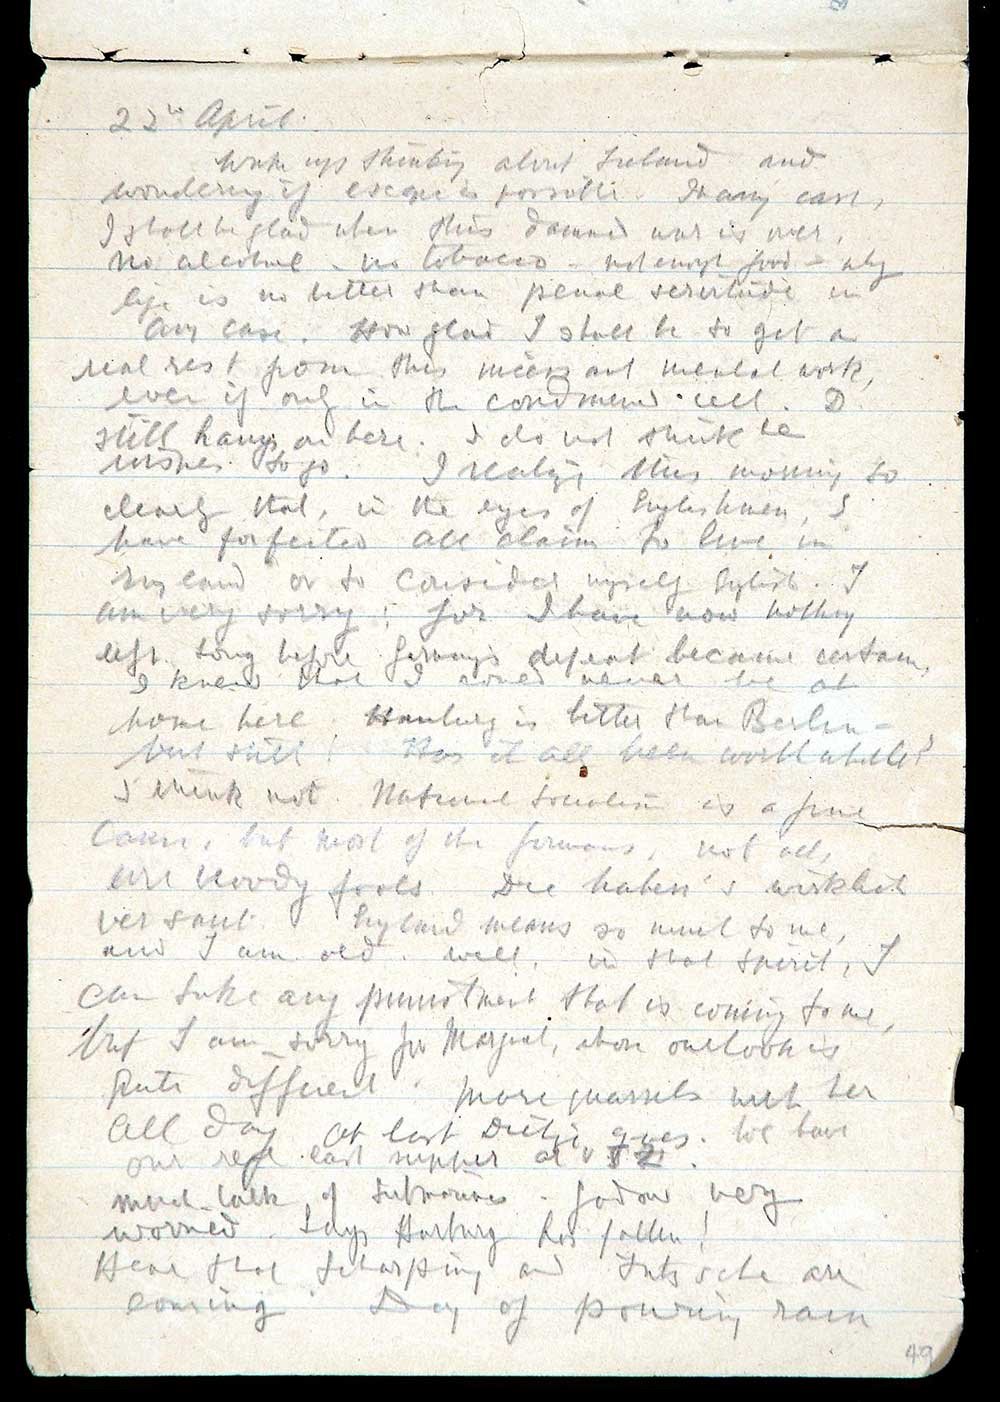 A handwritten journal entry